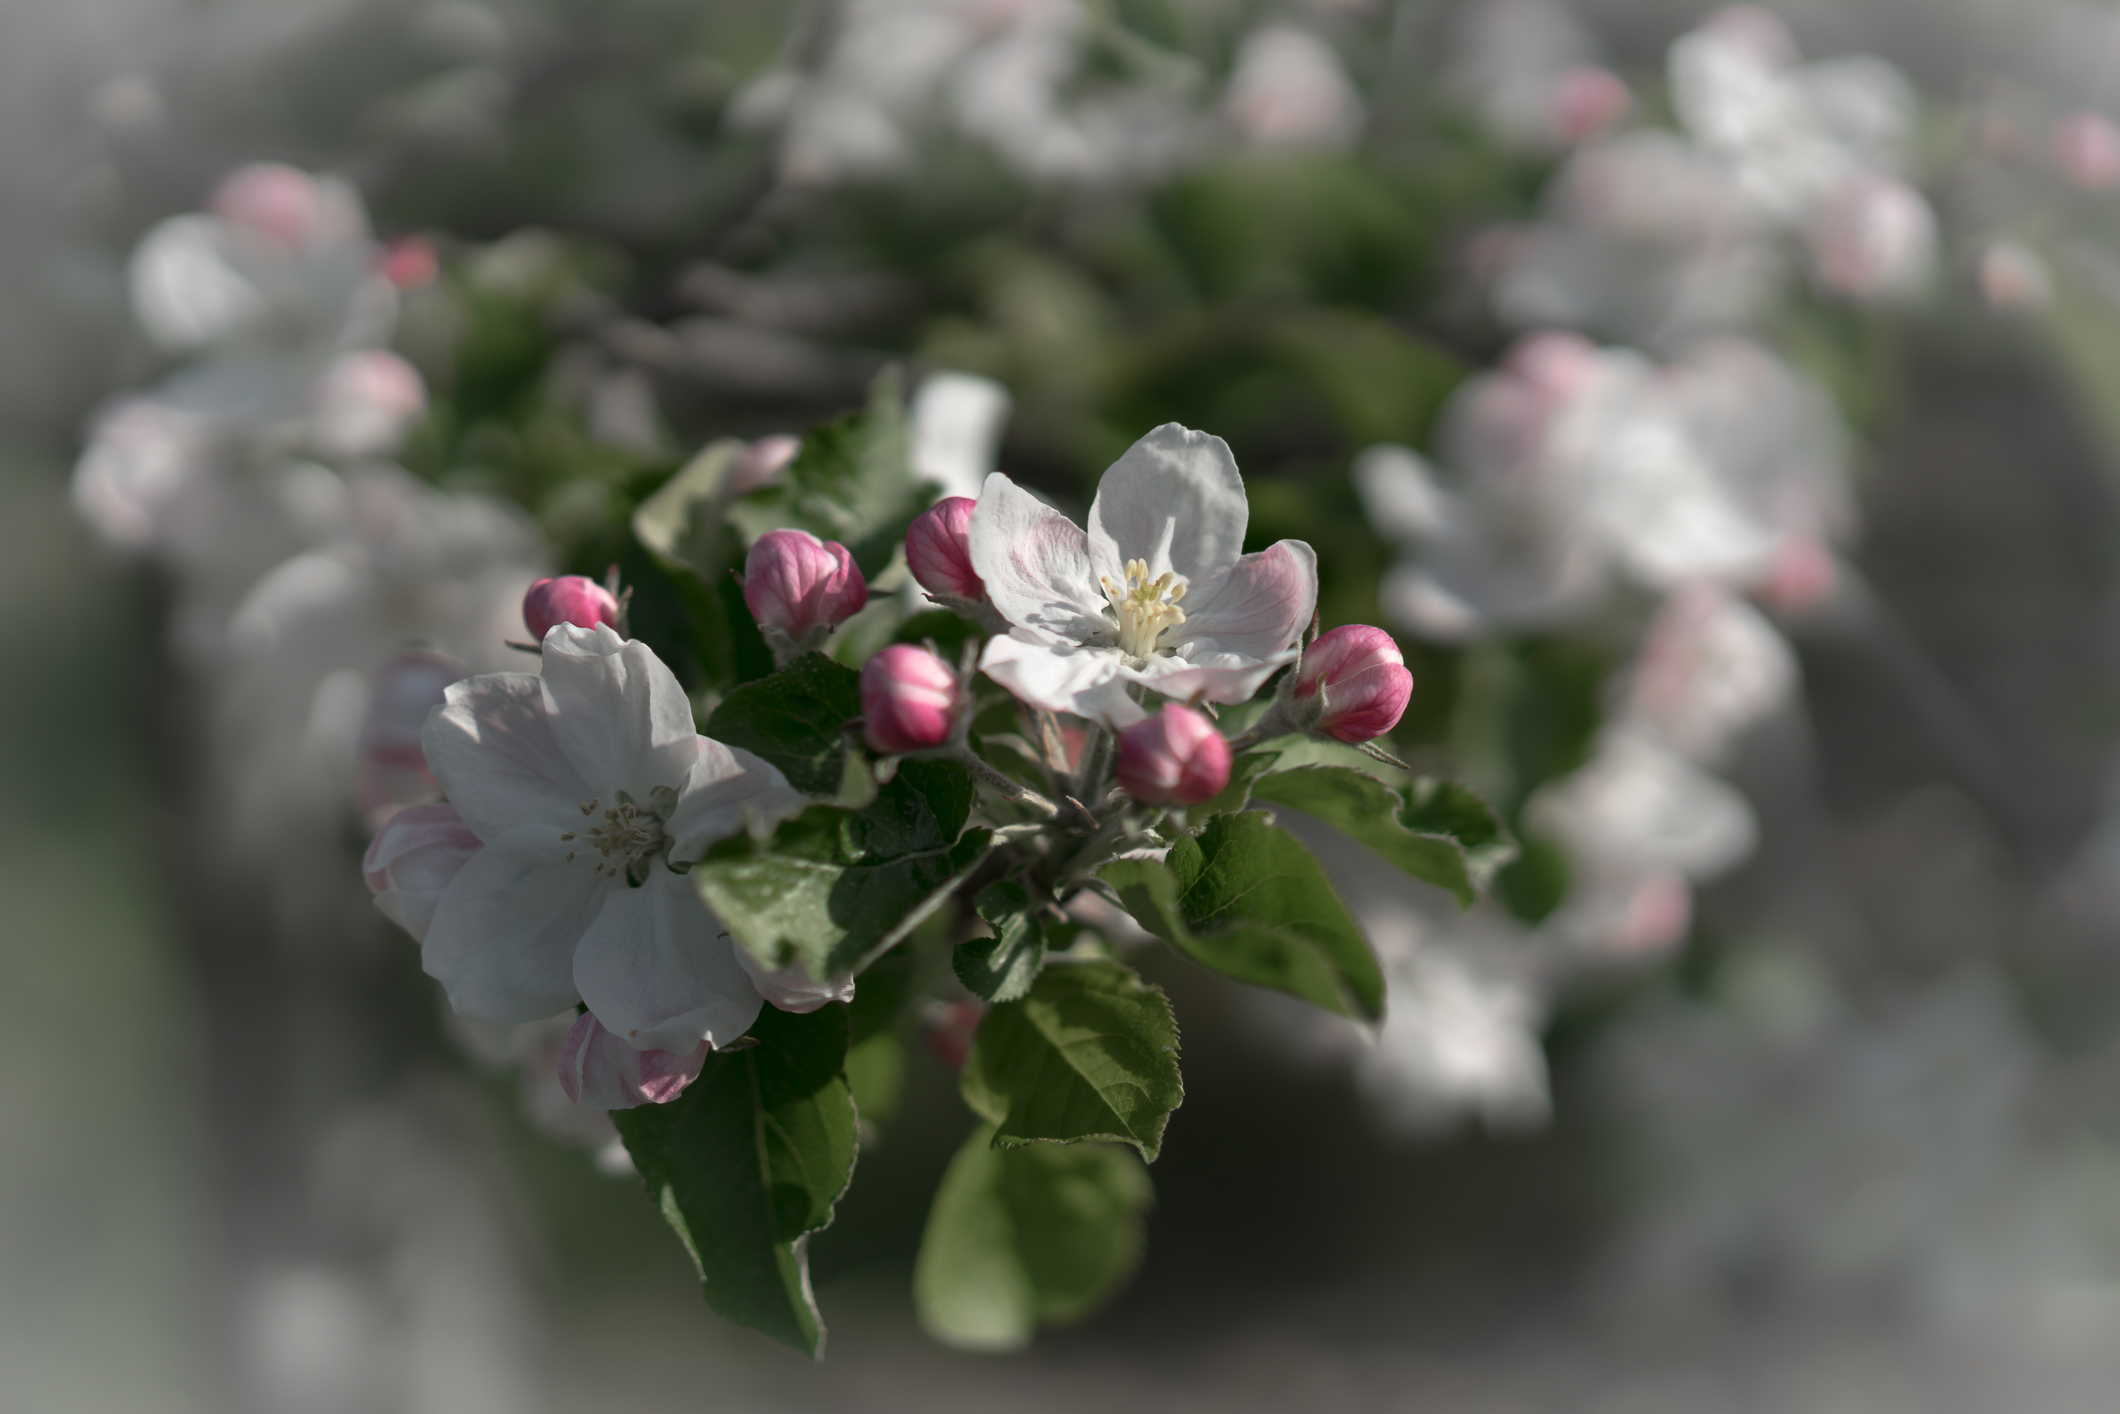 Zeit der Apfelblüte im Thurgau - eine weiss-rosa Pracht